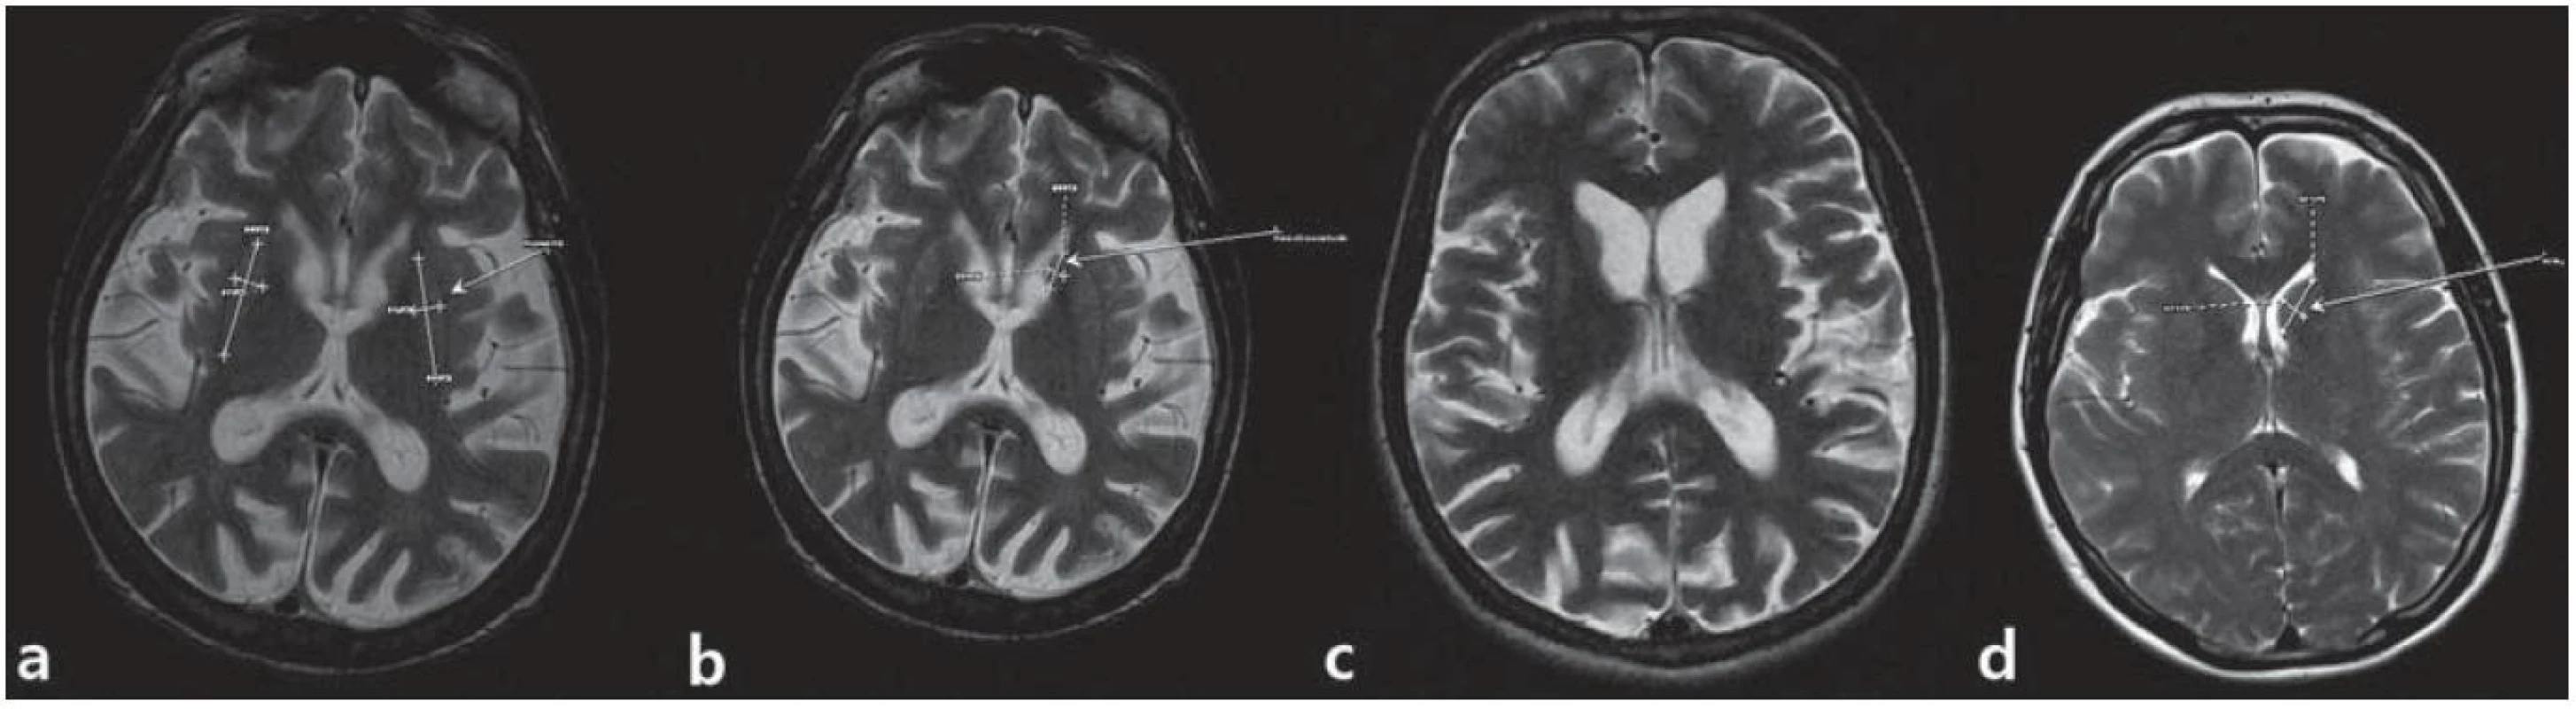 MR snímky mozgu pacienta z 1. kazuistiky.

a) postihnuté putamen, b) atrofické nucleus caudatum, c) dilatácia komorového systému a kortikálna atrofia, d) je na porovnanie ilustratívna snímka mozgu bez patologického nálezu. (Snímky získané v spolupráci s MUDr. M. Spurným, Novamed, Banská Bystrica.)